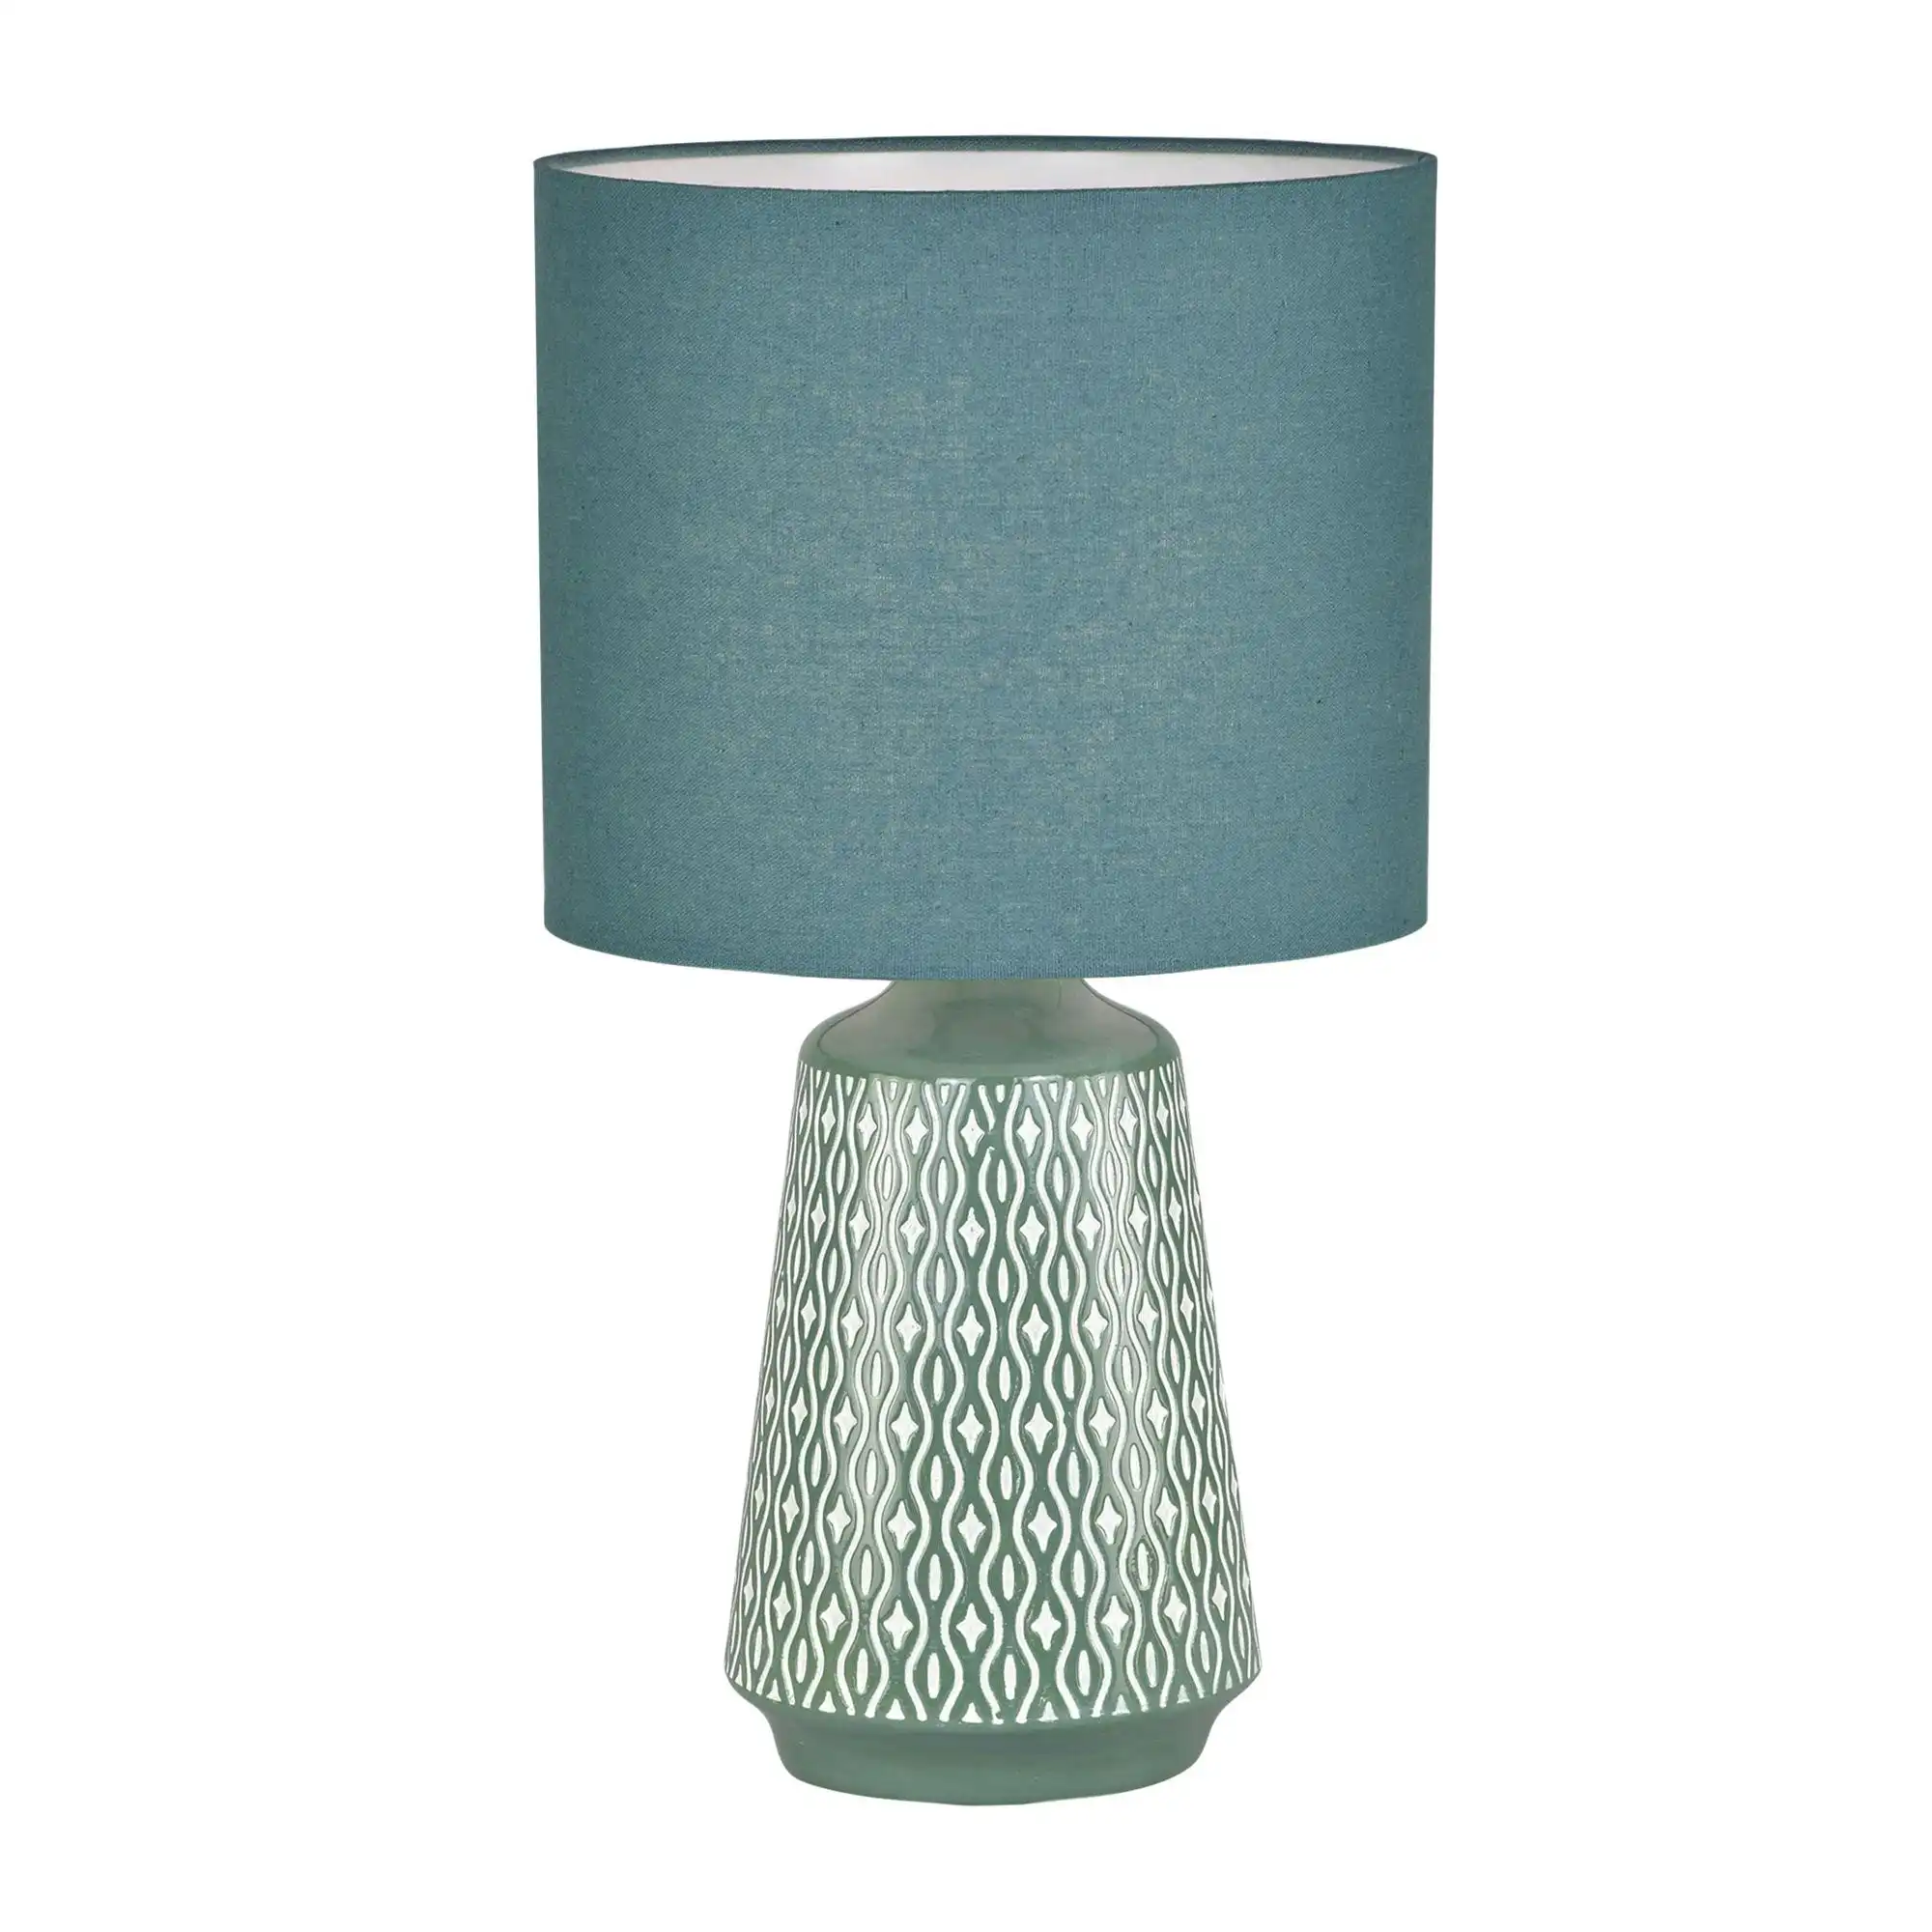 MOANA Ceramic Table Lamp with Shade Green